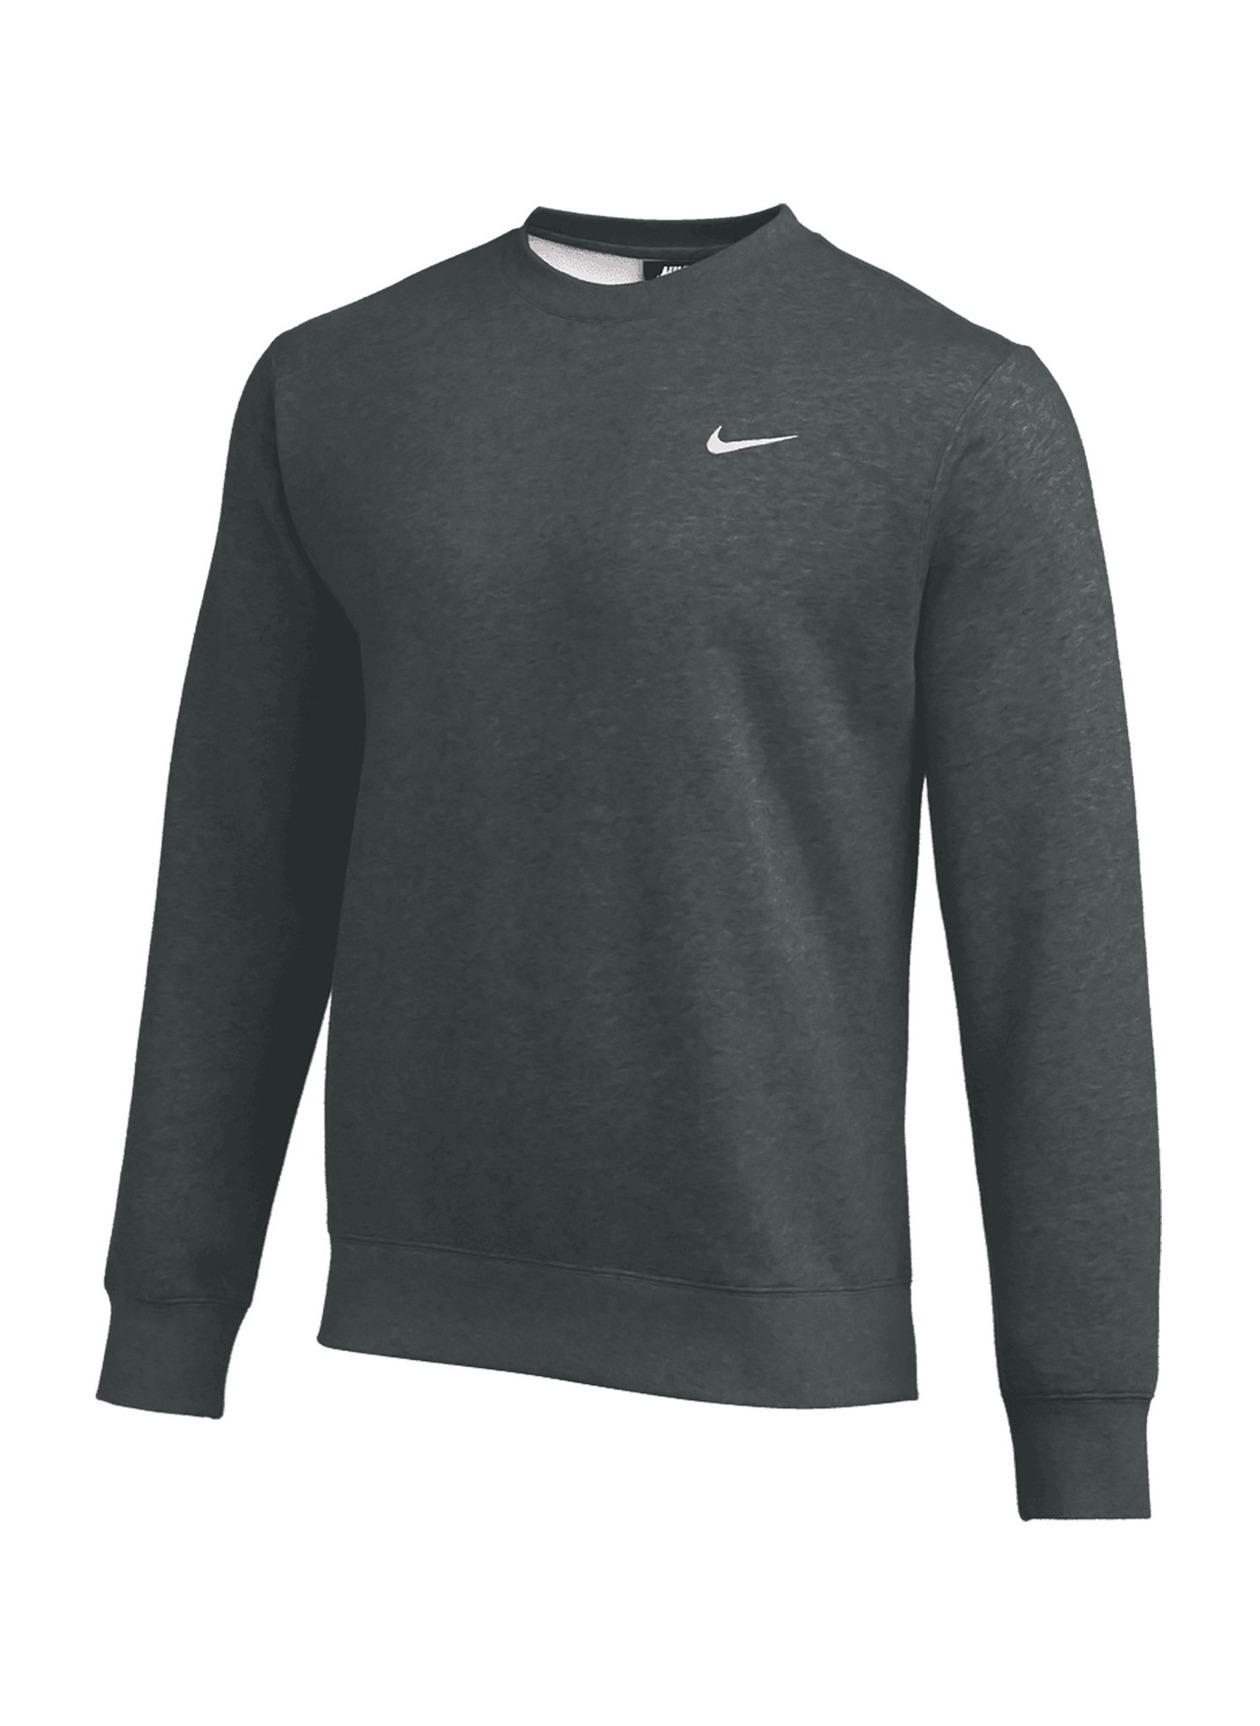 Custom Nike Club Fleece Crewneck Sweatshirt - Embroidery